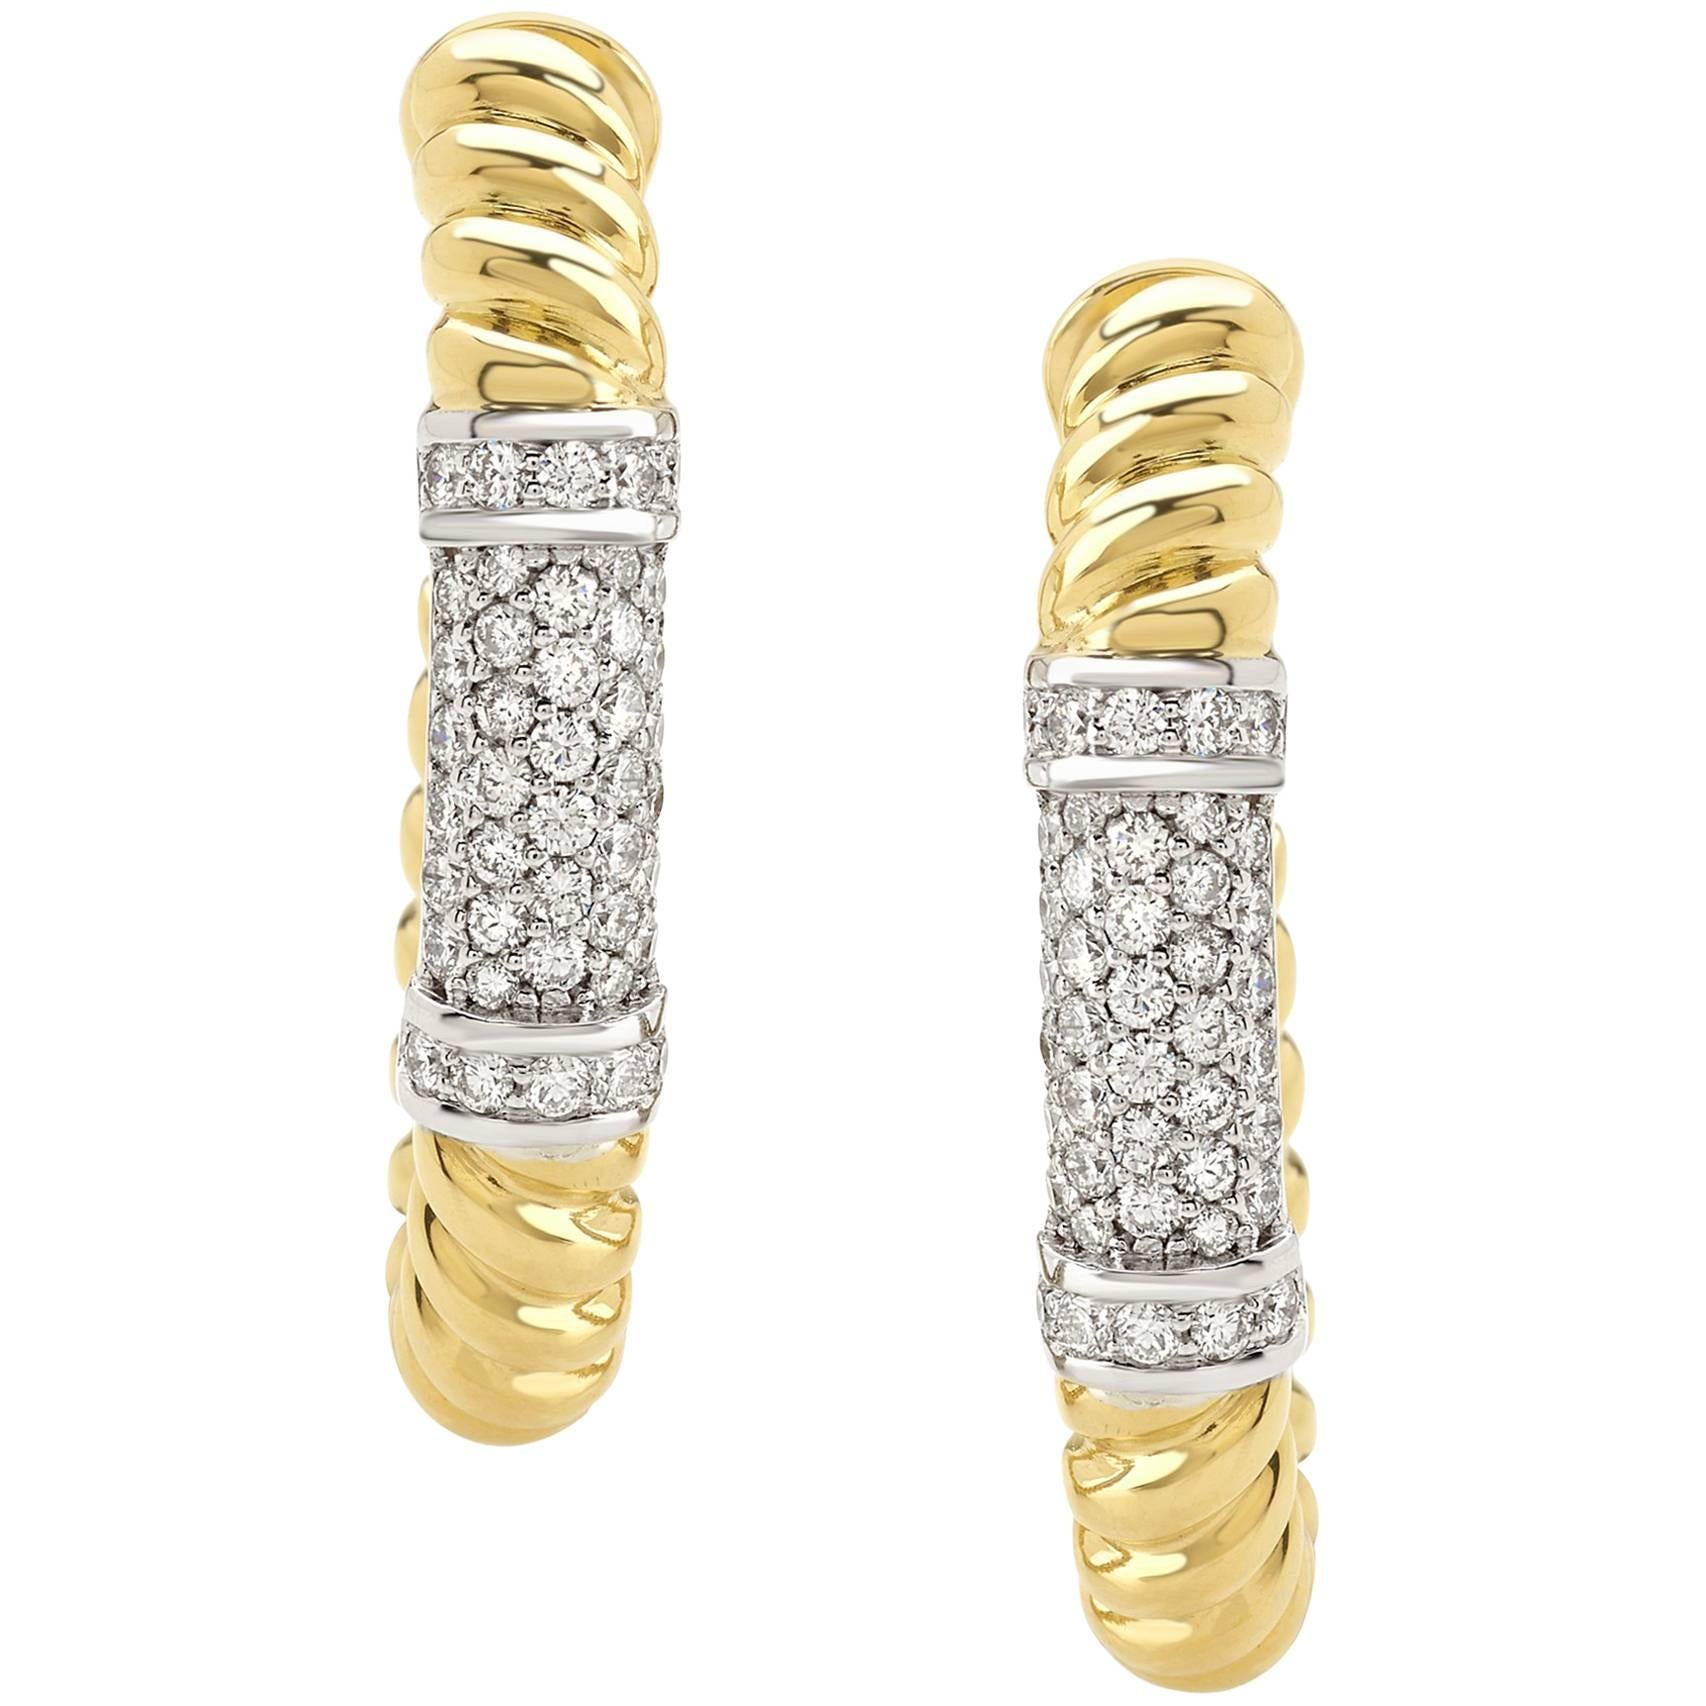 Paar Ohrringe aus der Kollektion "Rope" aus 18 Karat Gelbgold und Diamanten